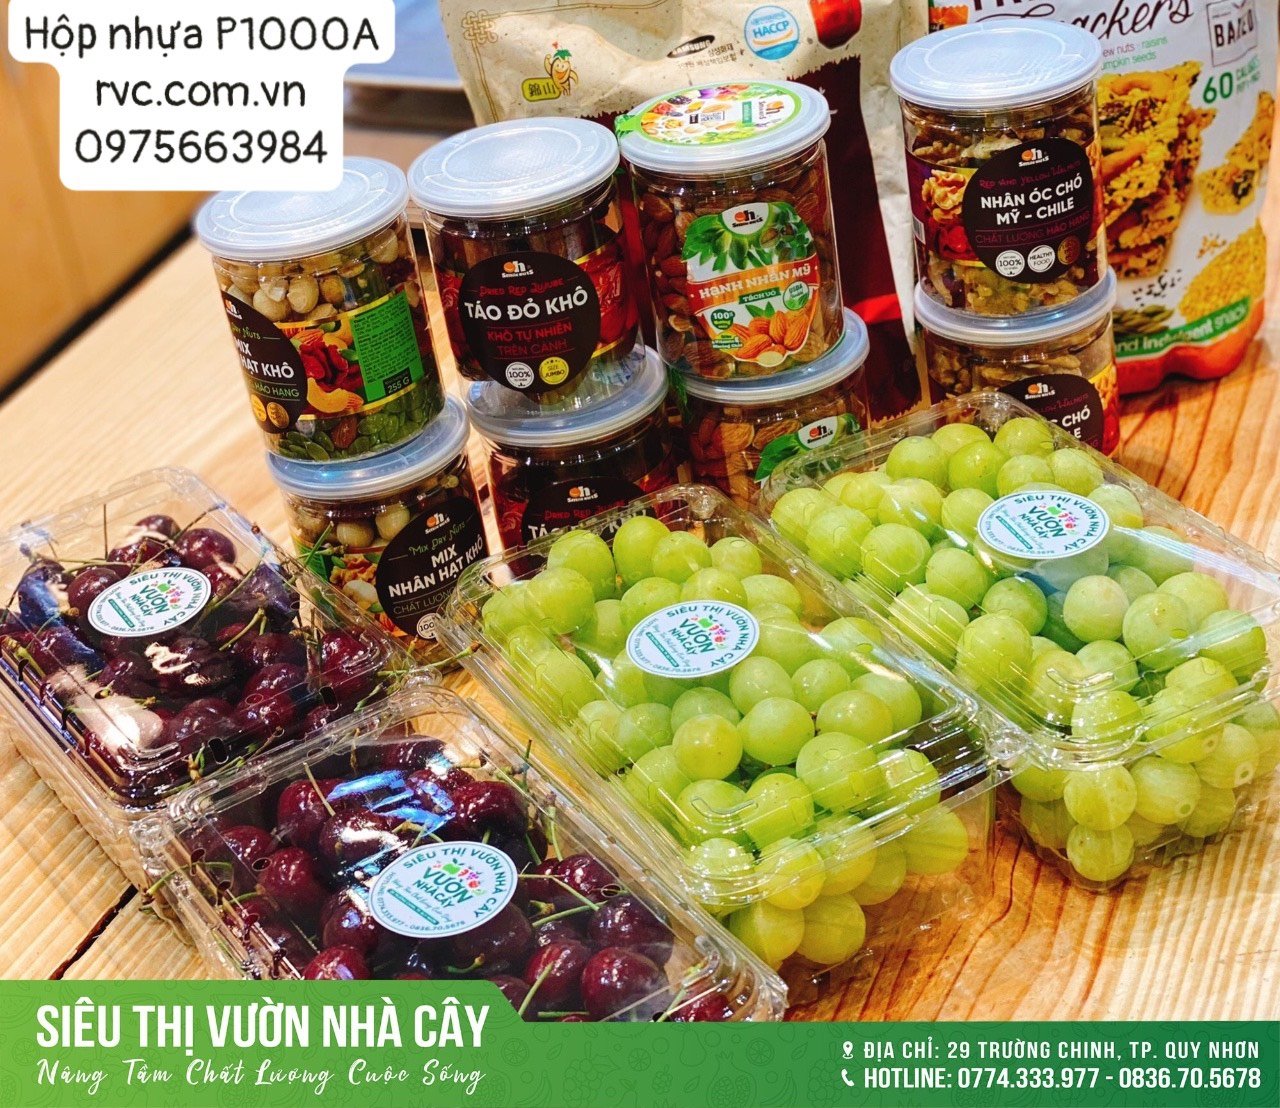 Tuyệt chiêu bảo quản nông sản hiệu quả bằng hộp nhựa trái cây  6190930_Hop_nhua_dung_trai_cay_18